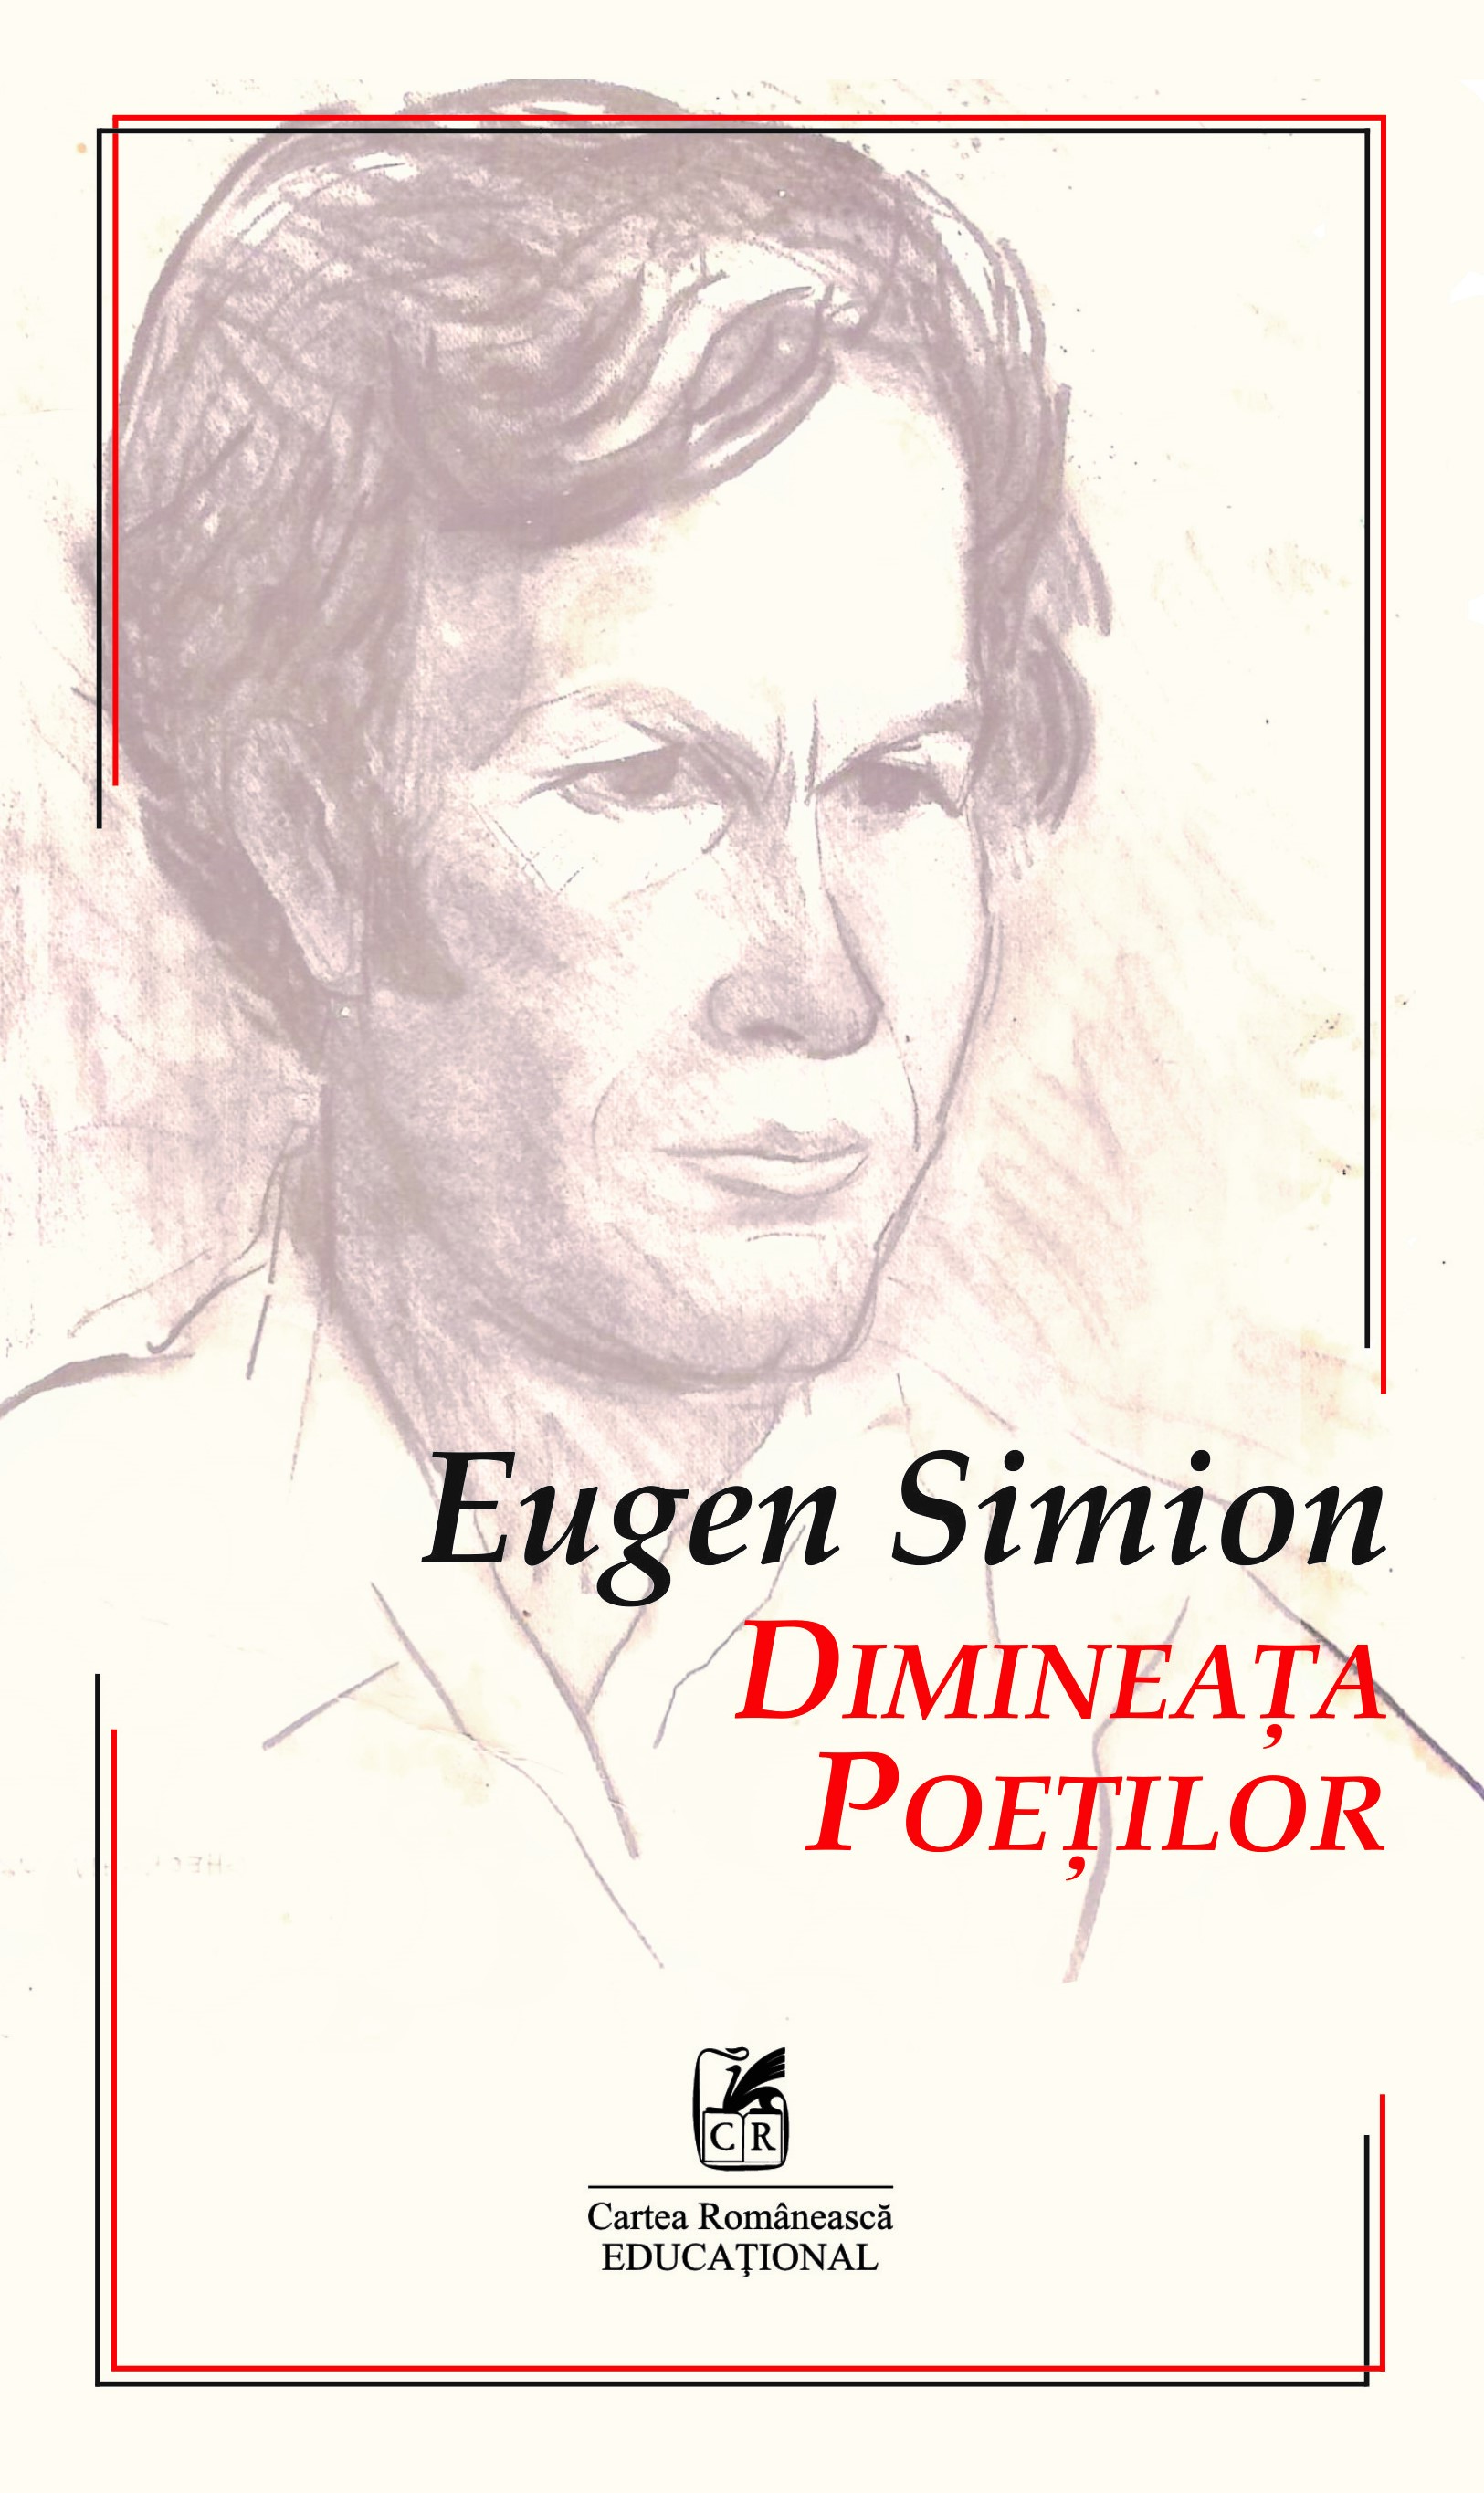 PDF Dimineata poetilor | Eugen Simion Cartea Romaneasca educational Carte